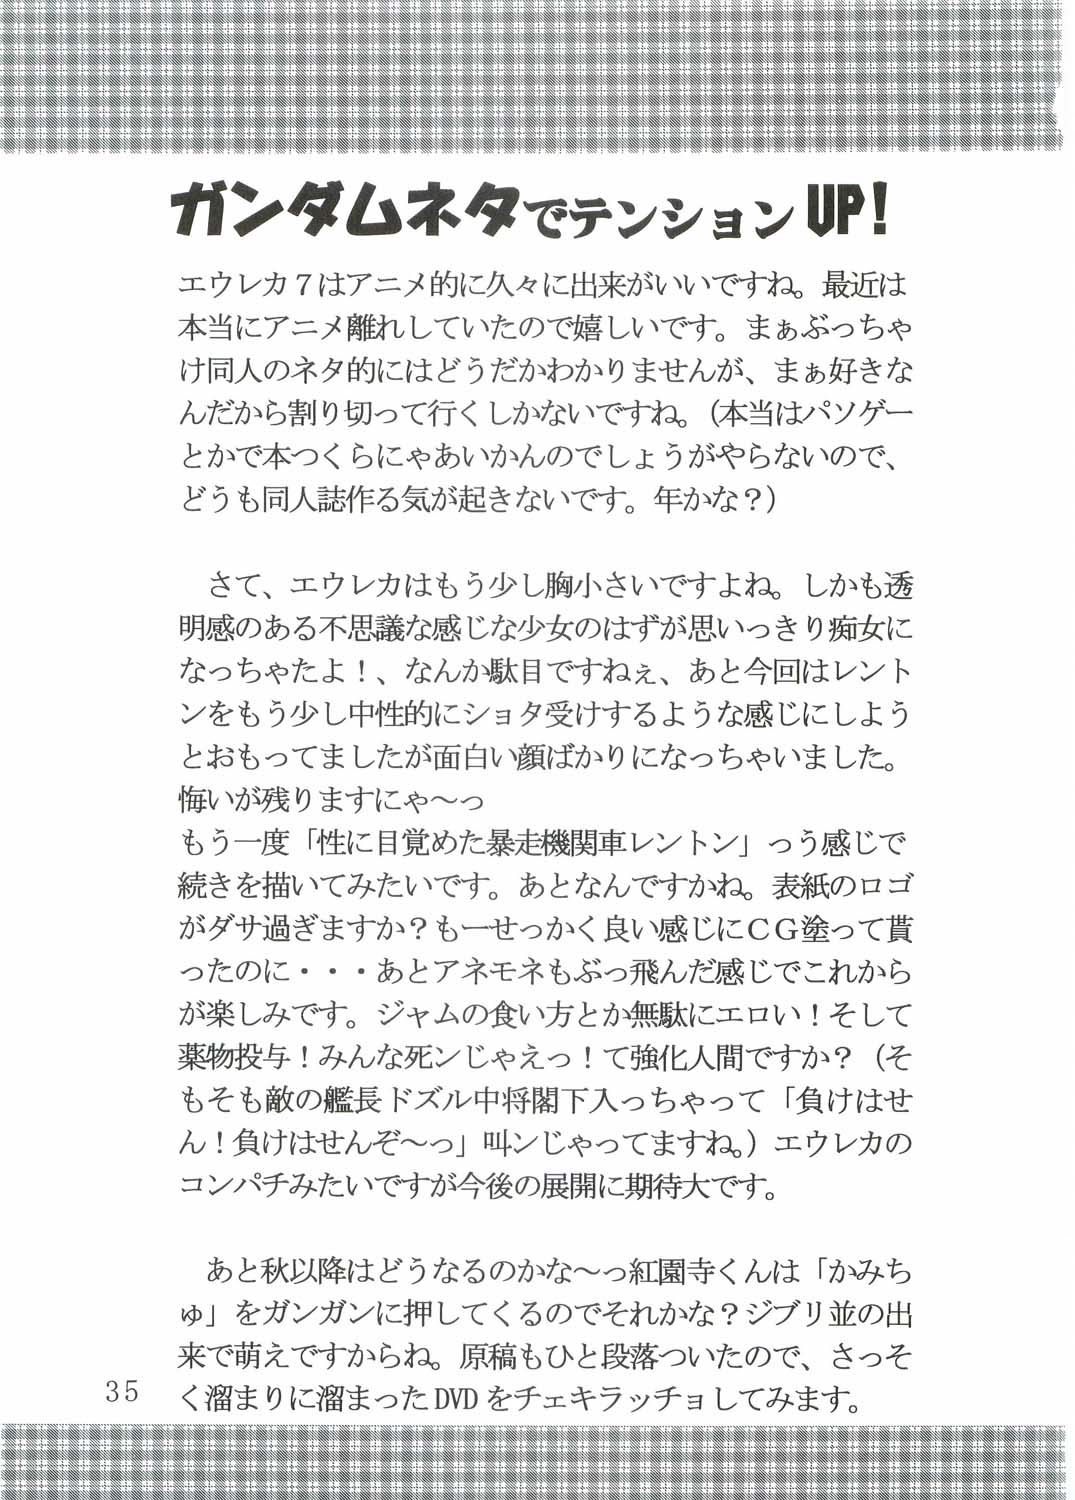 [St. Rio (Kitty, Kouenji Rei)] Ura ray-out (Eureka seveN) page 36 full